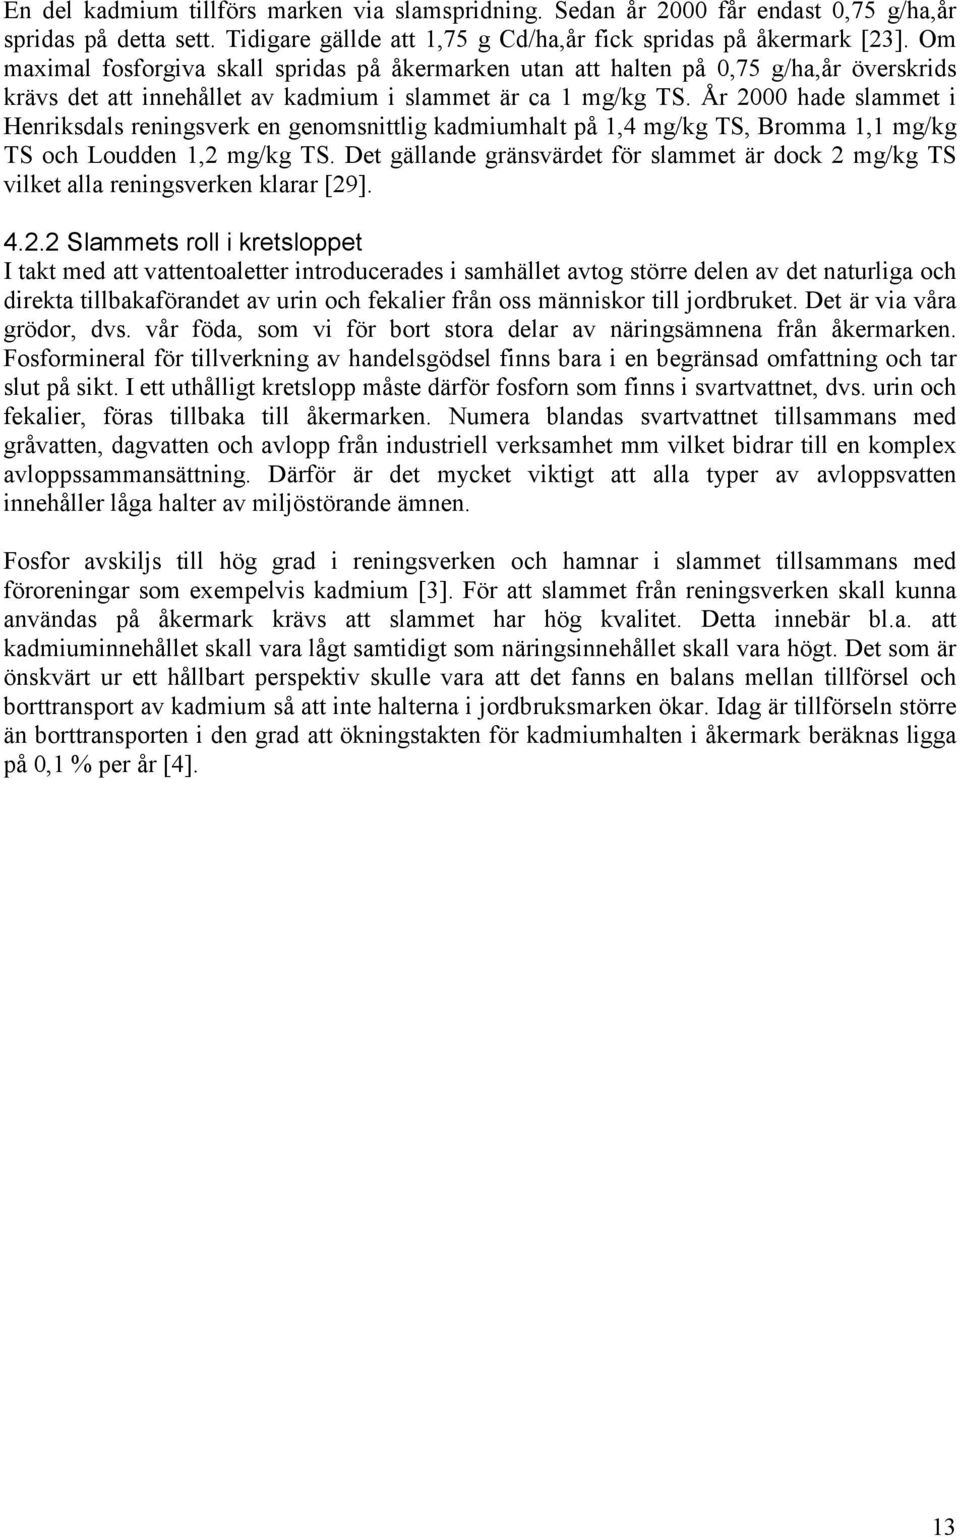 År 2000 hade slammet i Henriksdals reningsverk en genomsnittlig kadmiumhalt på 1,4 mg/kg TS, Bromma 1,1 mg/kg TS och Loudden 1,2 mg/kg TS.